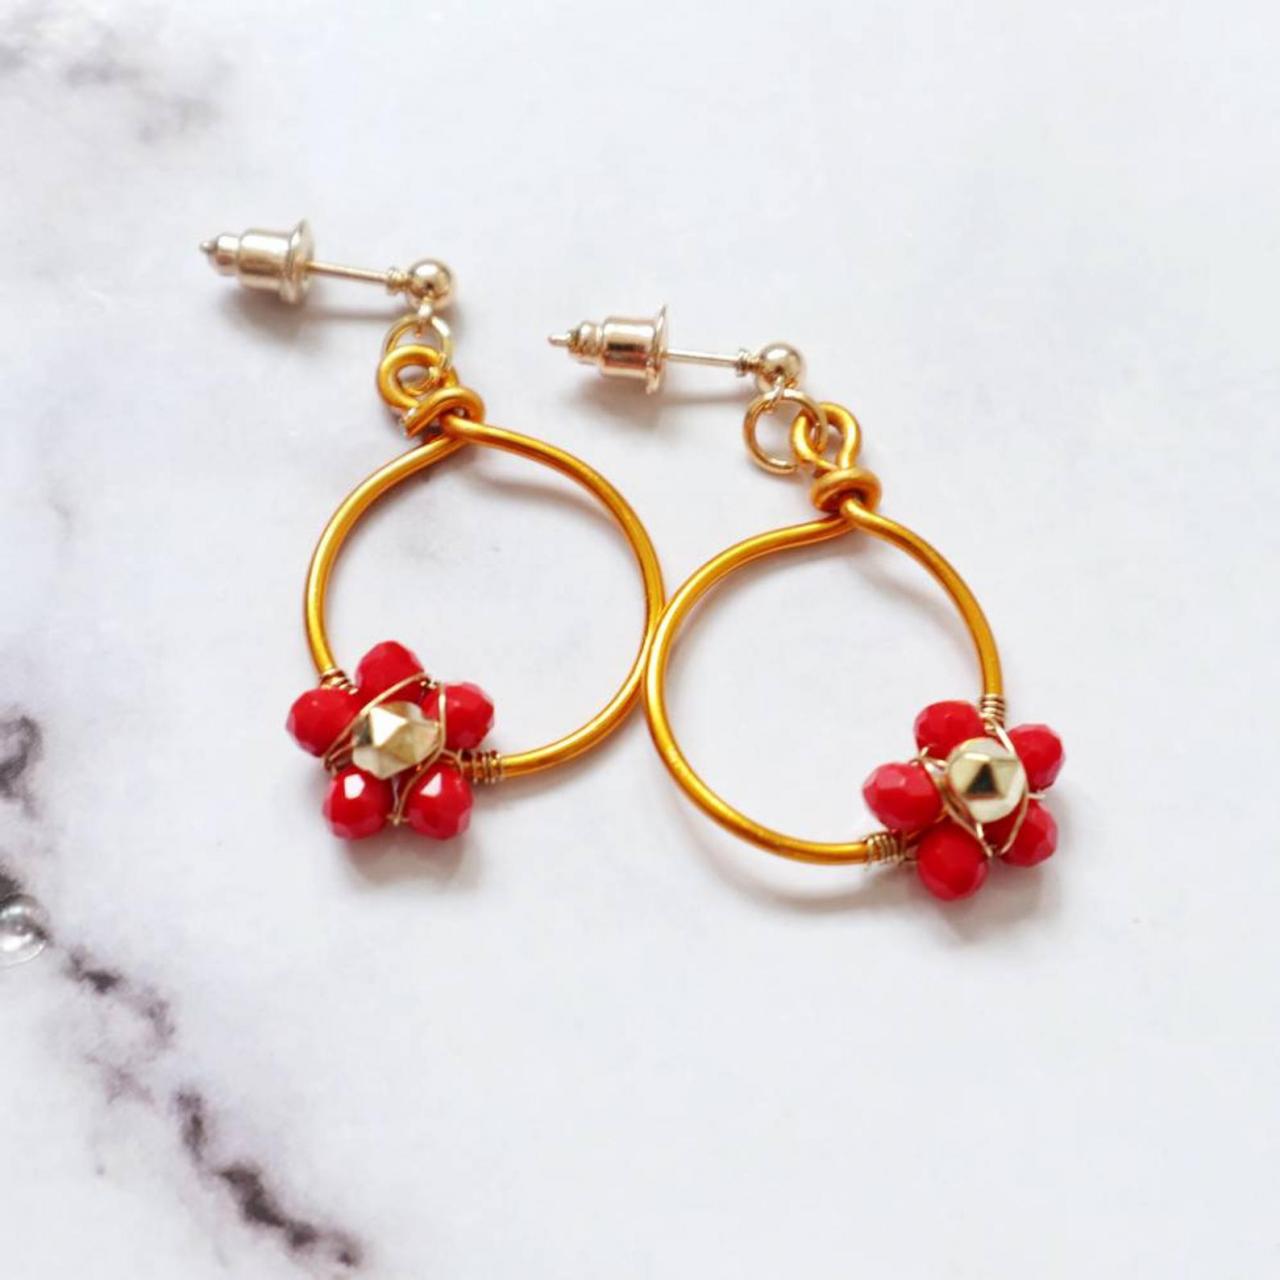 Minimal Hoops Earrings, Flower Earrings, Beaded Earrings, Minimalist Golden Hoops, Golden Hoops For Woman, Flower Minimalist Earrings